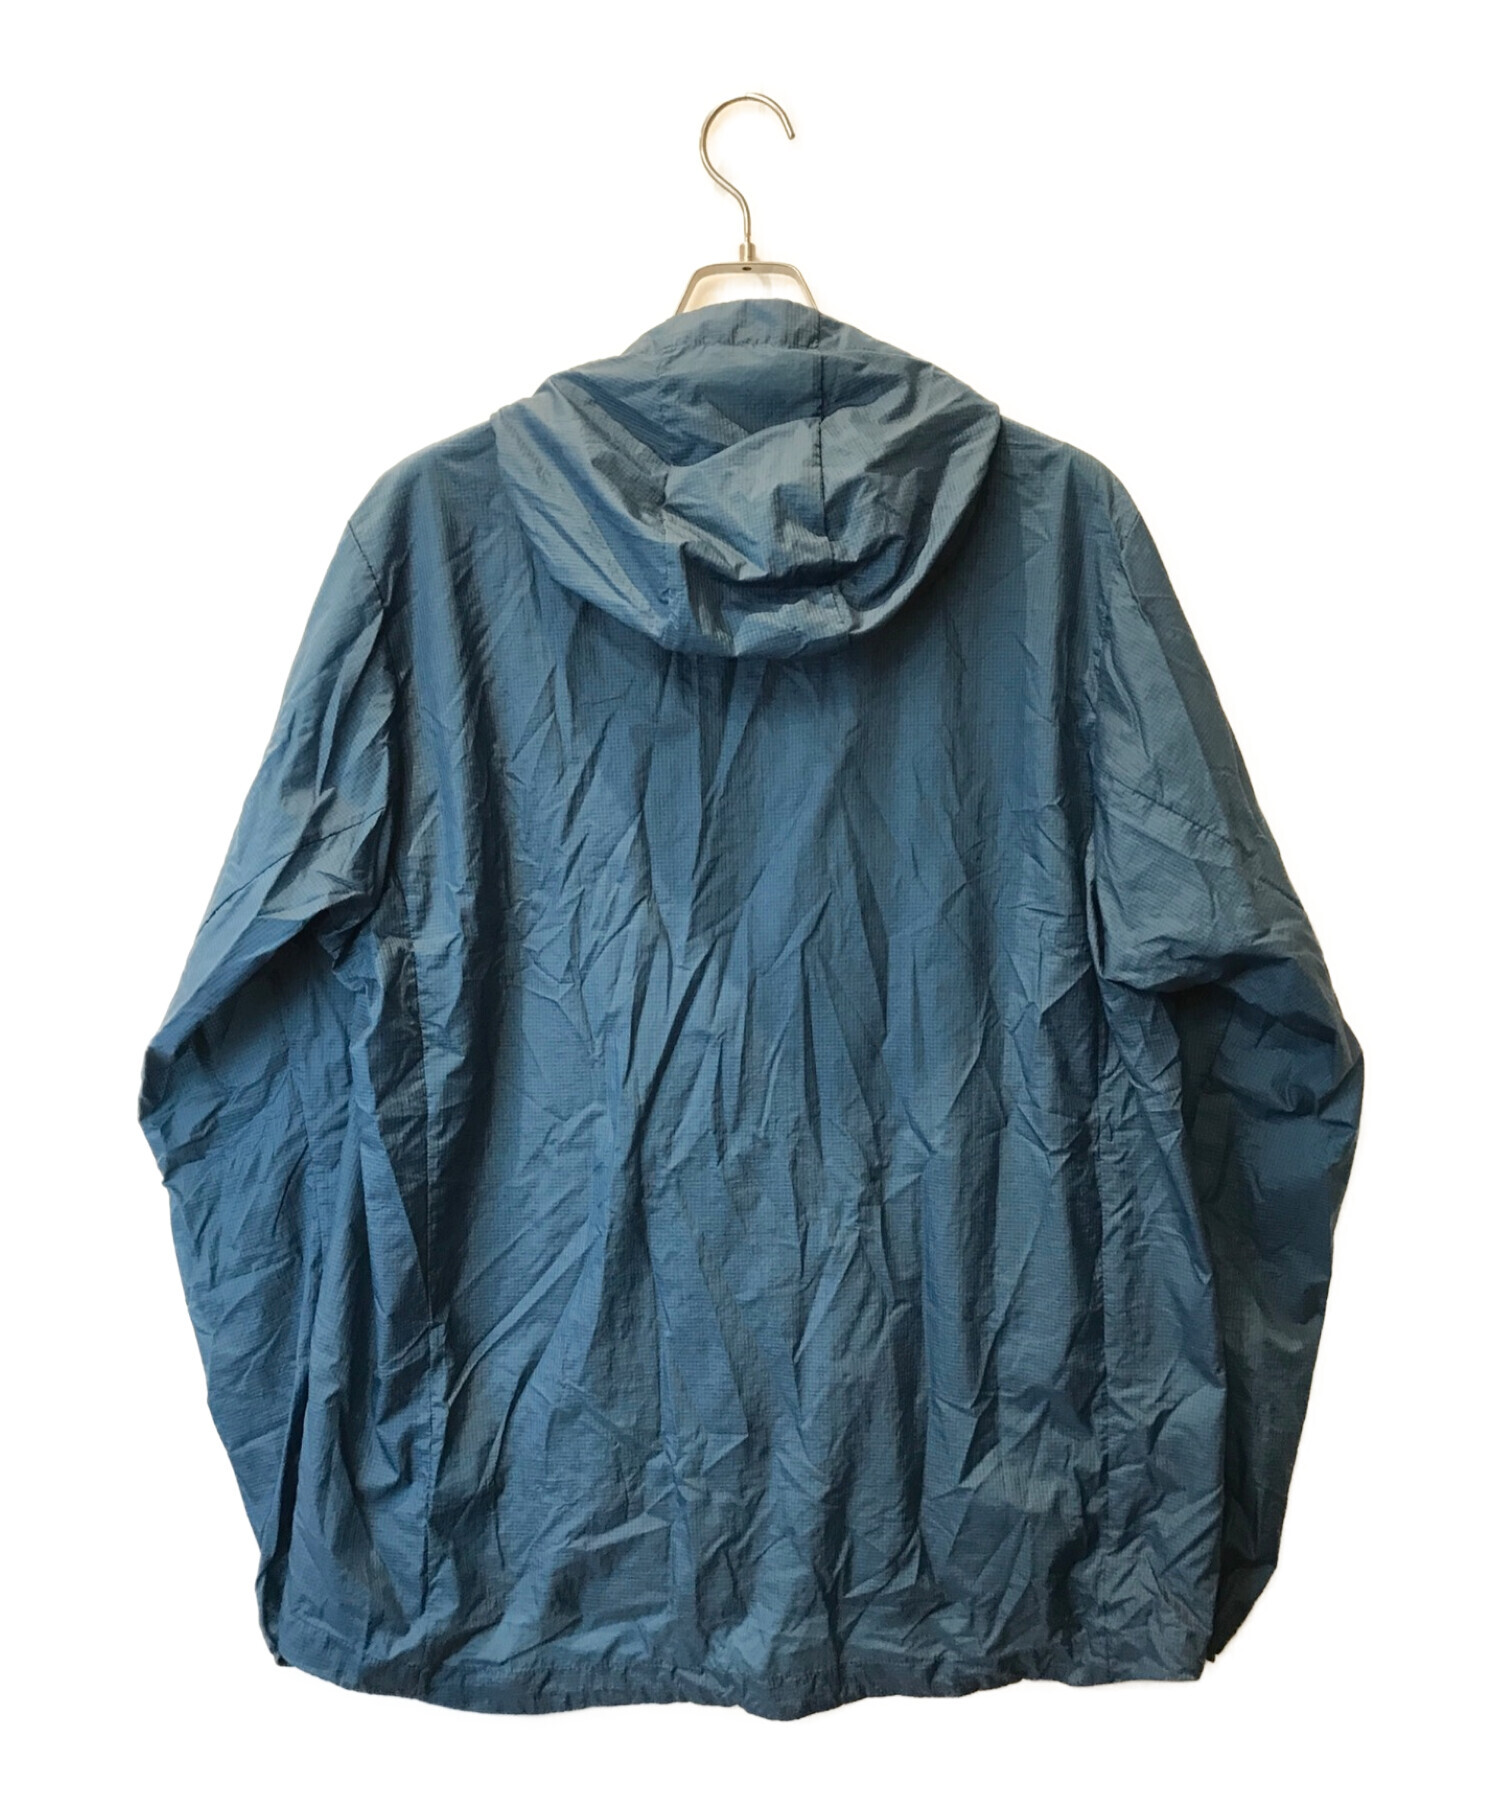 パタゴニア フーディニジャケット ブルー サイズXL - アウター